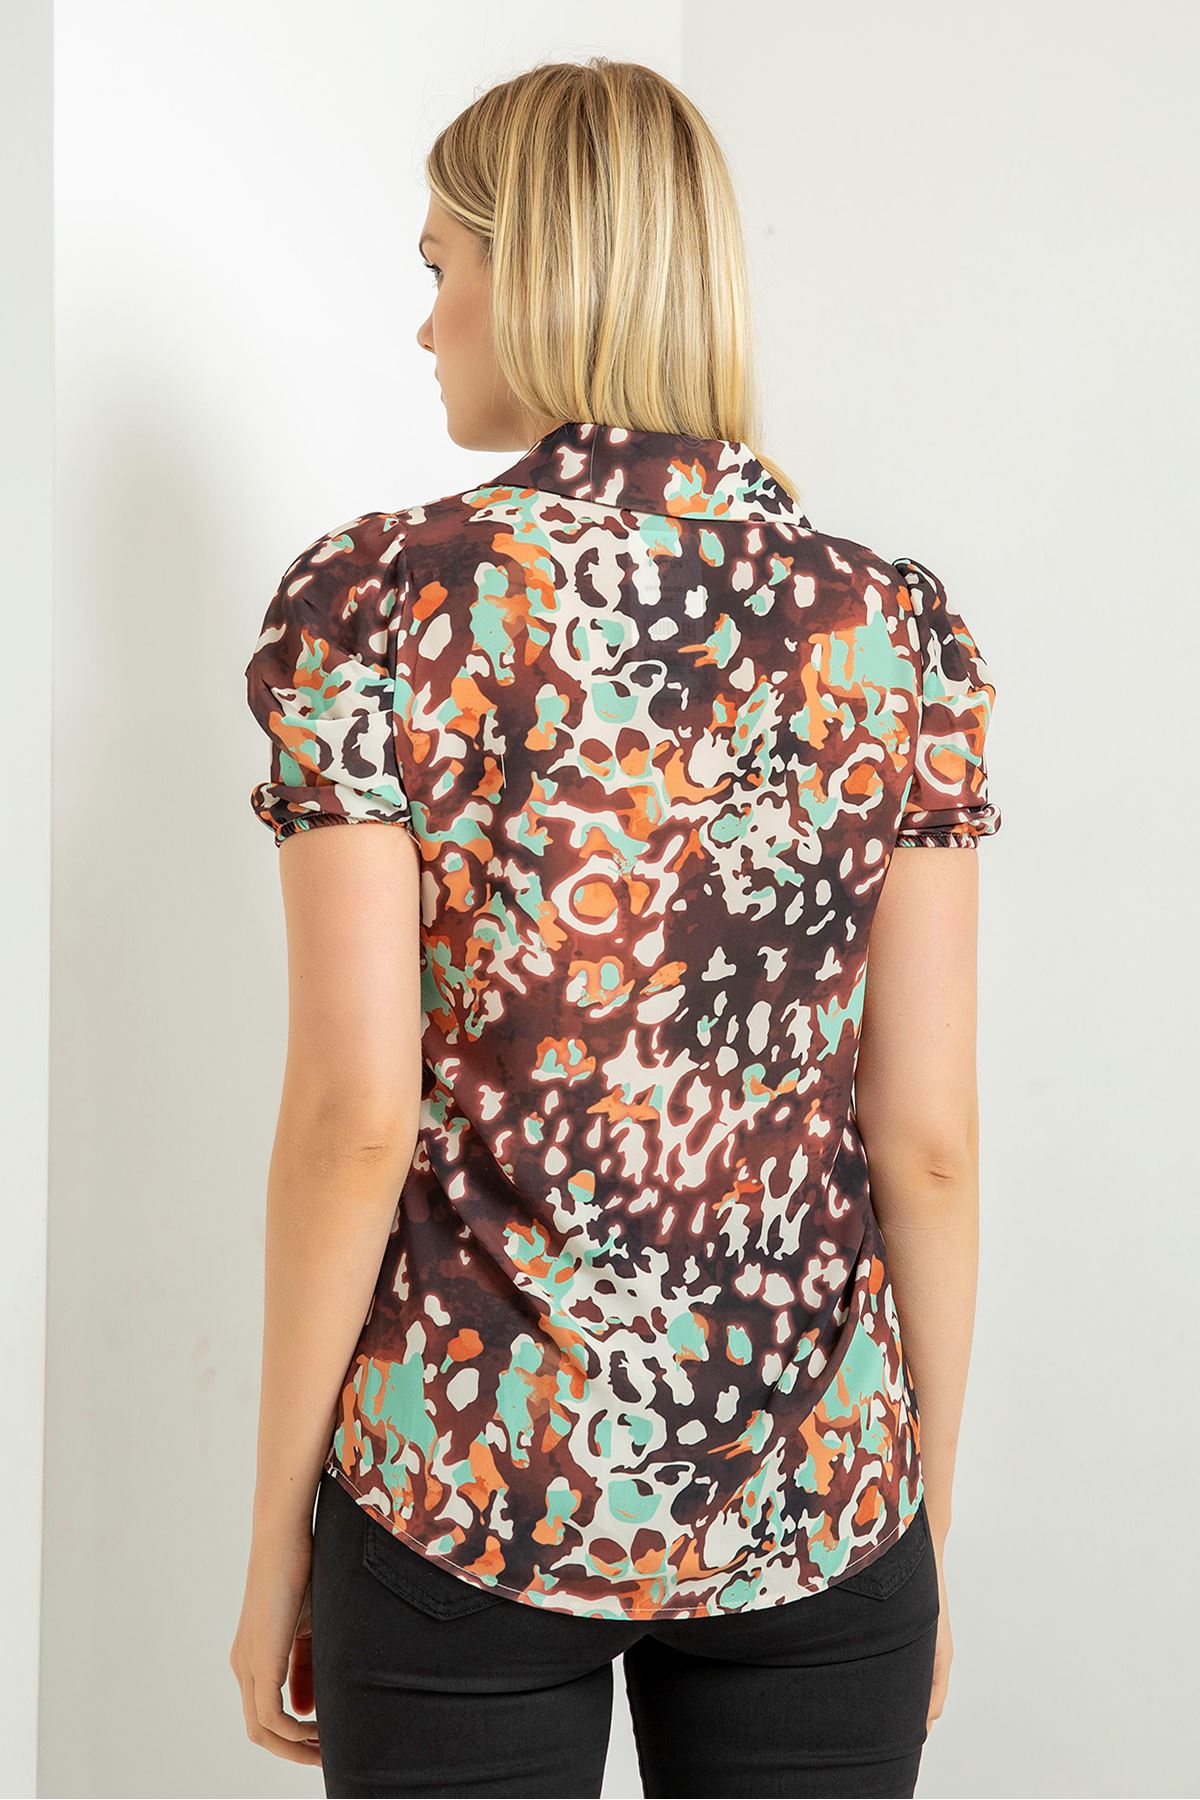 Jesica Fabric Short Sleeve Hip Height Leopard Print Women'S Shirt - Mint